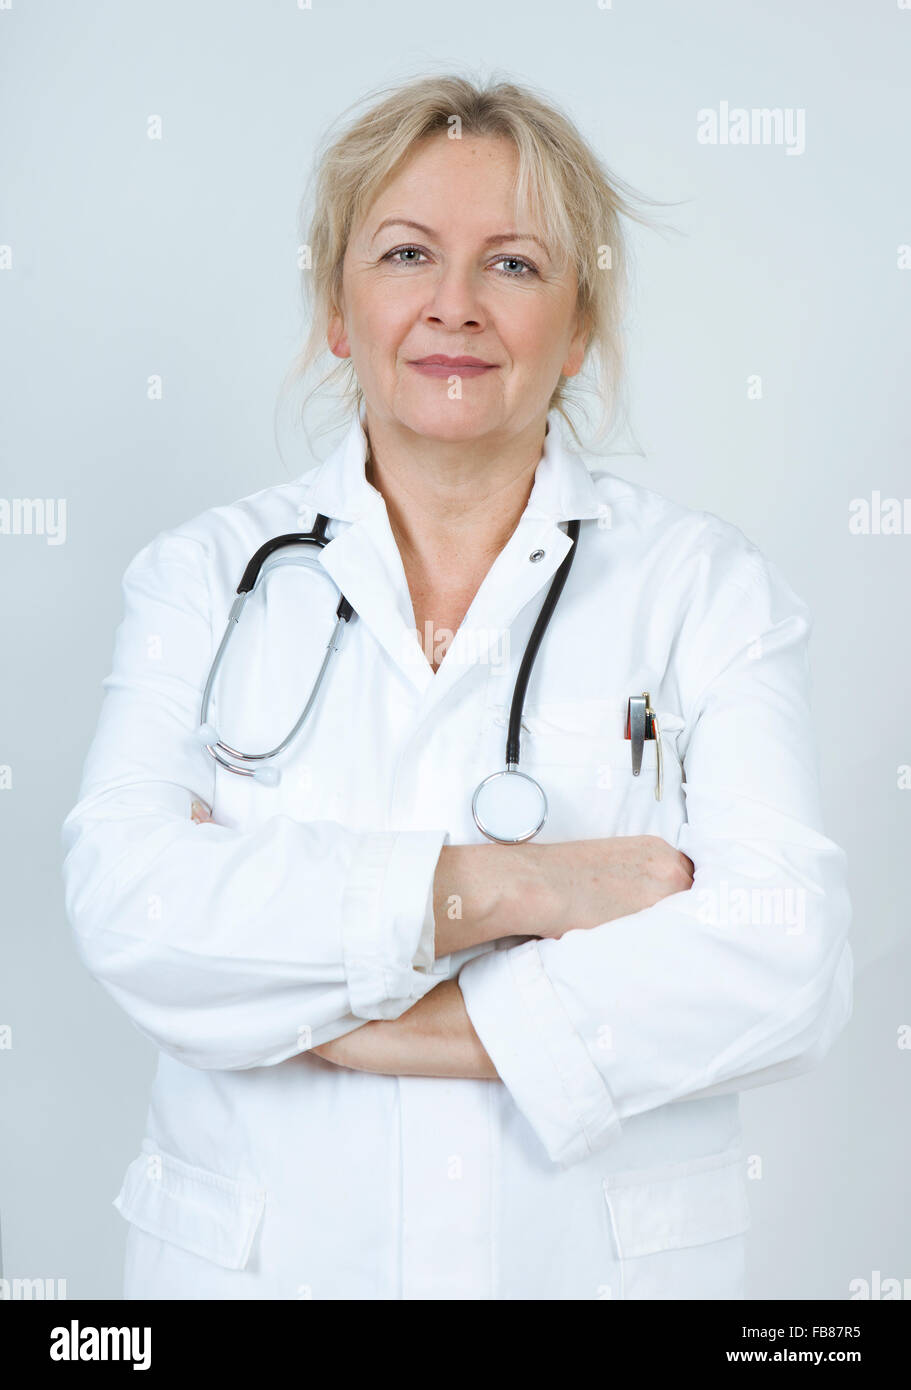 ein Arzt in einem weißen Kittel mit Stethoskop Stockfoto